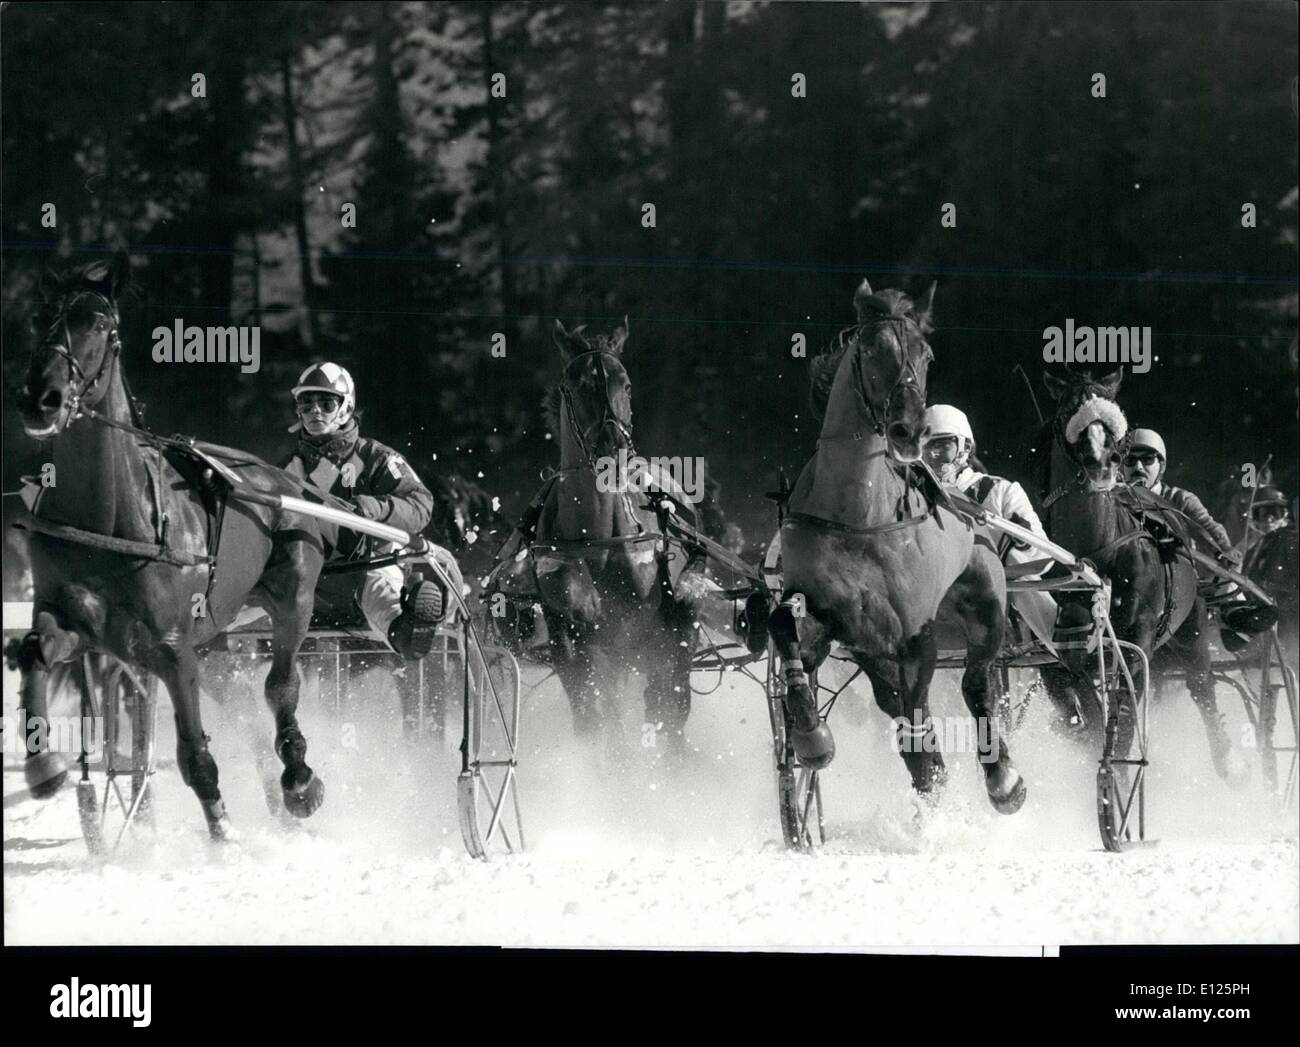 Febbraio 02, 1989 - Con il sulky sul lago: Swiss winter resort San Moritz è rinomata per emozionanti corse di cavalli sul suo congelati Foto Stock